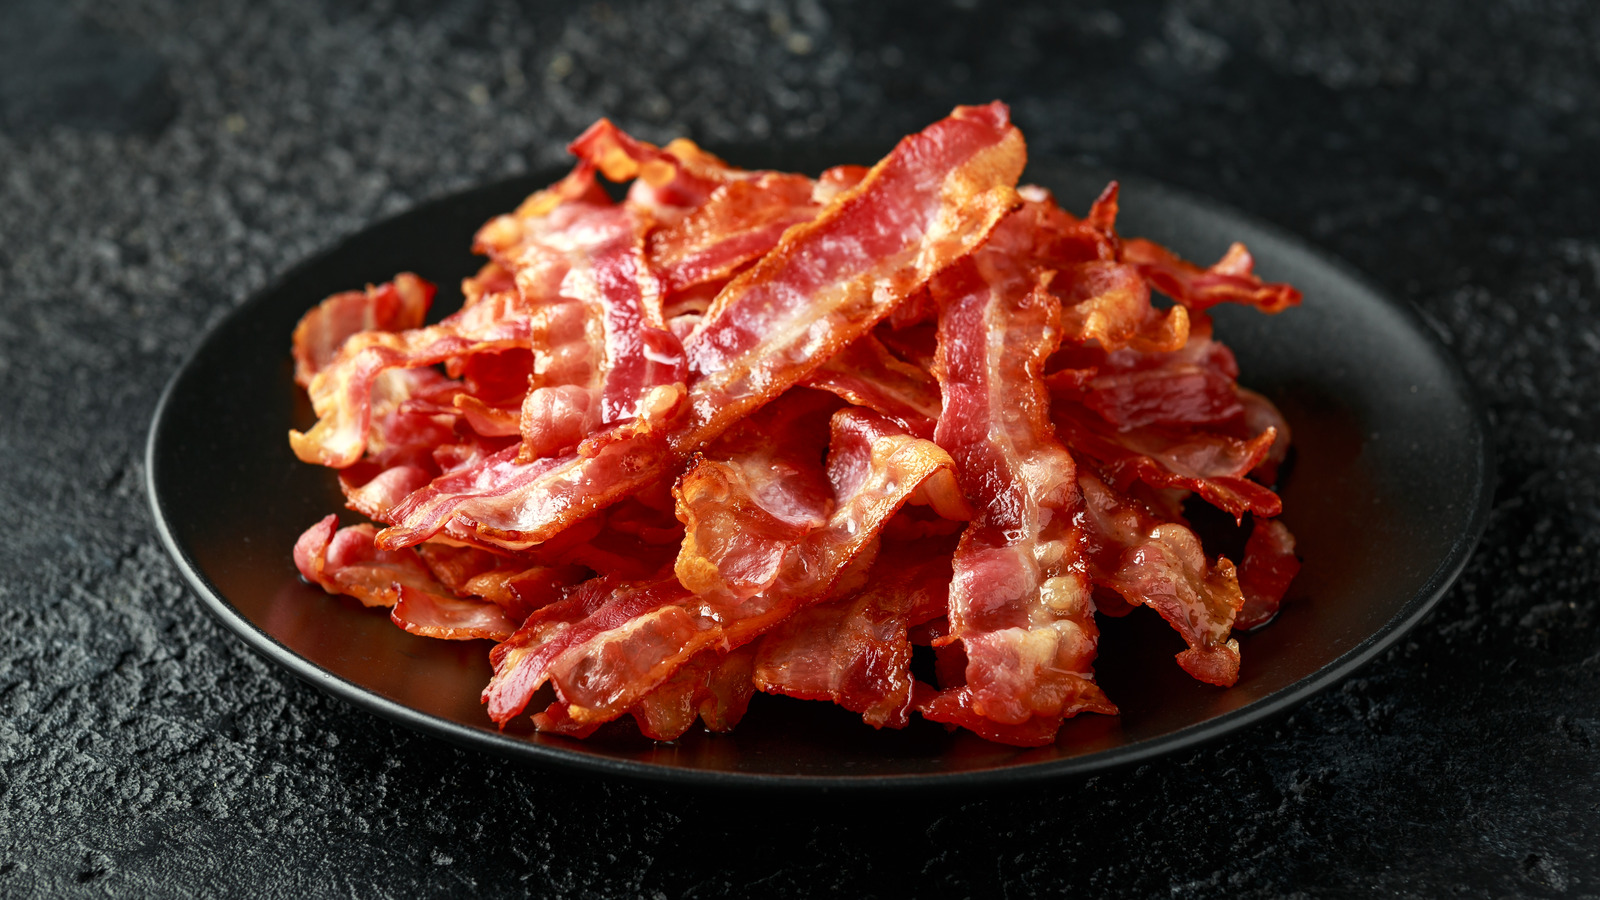 How to Reheat Bacon? 